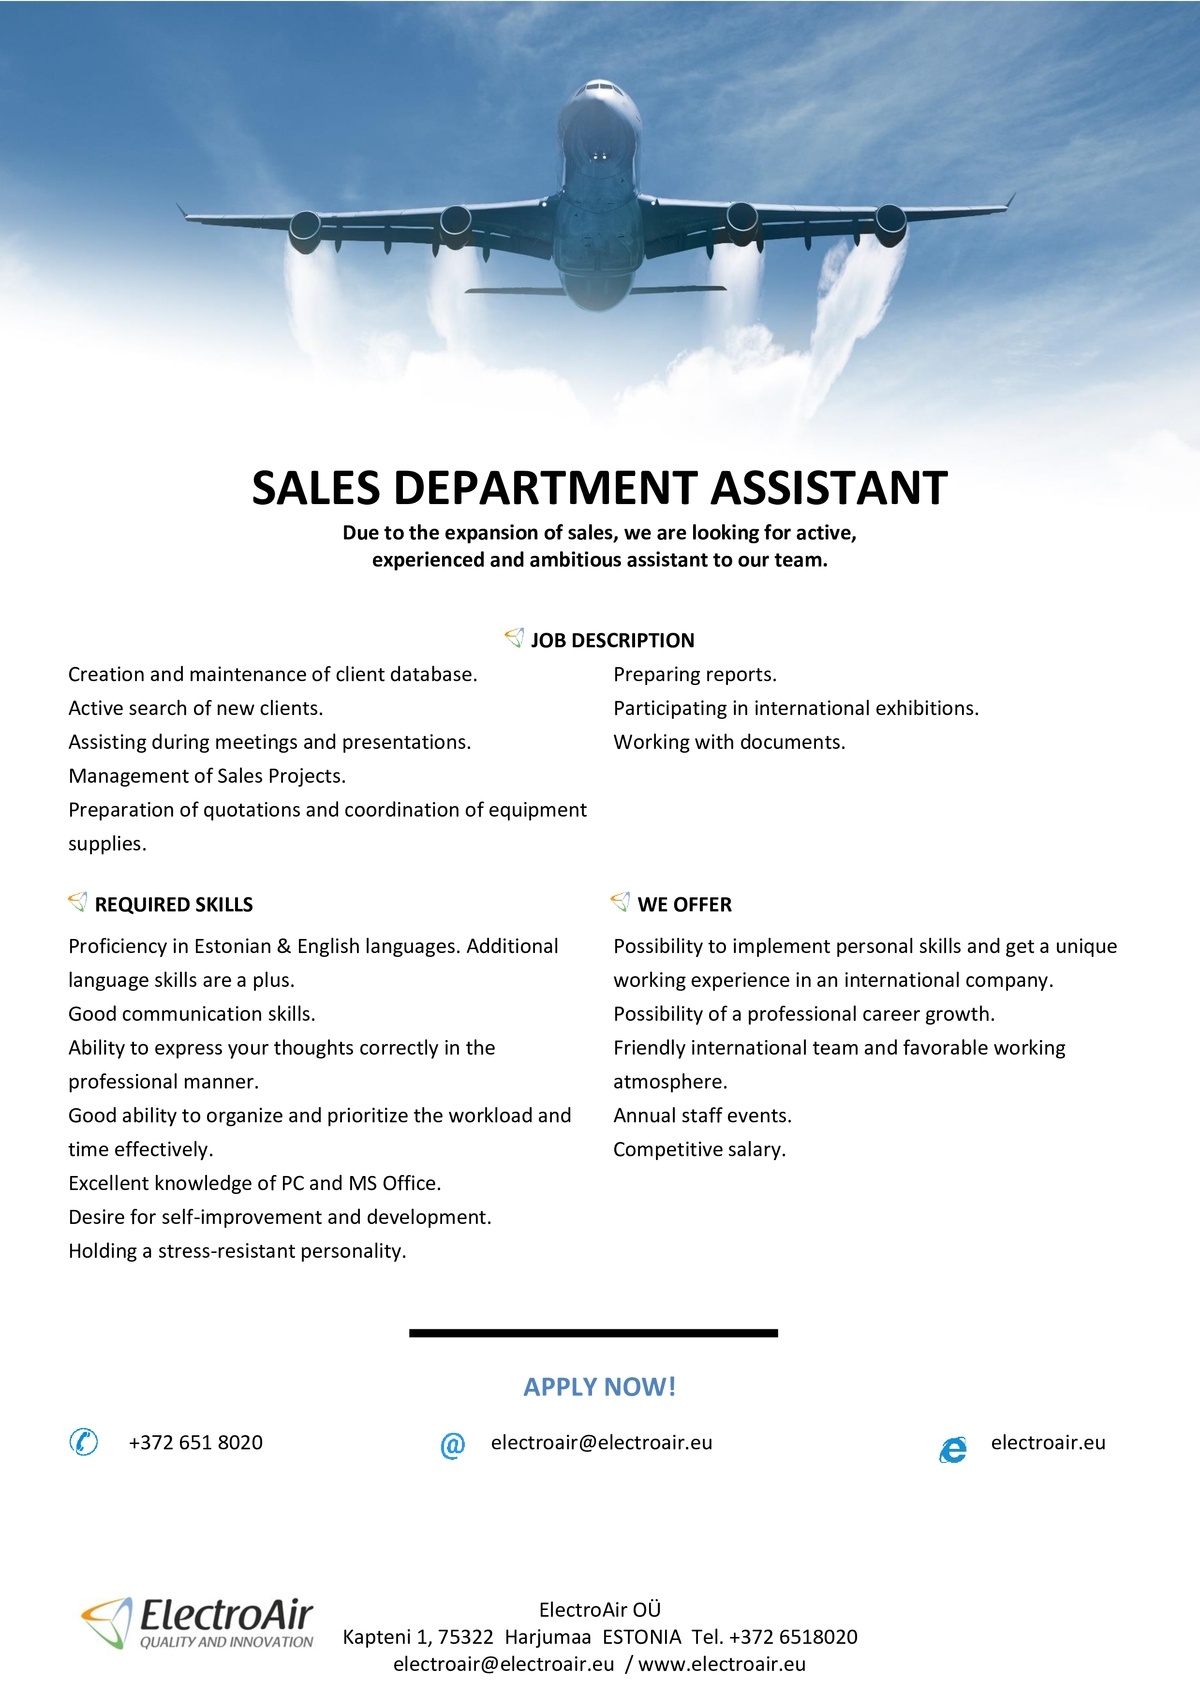 ELECTROAIR OÜ Sales Department Assistant